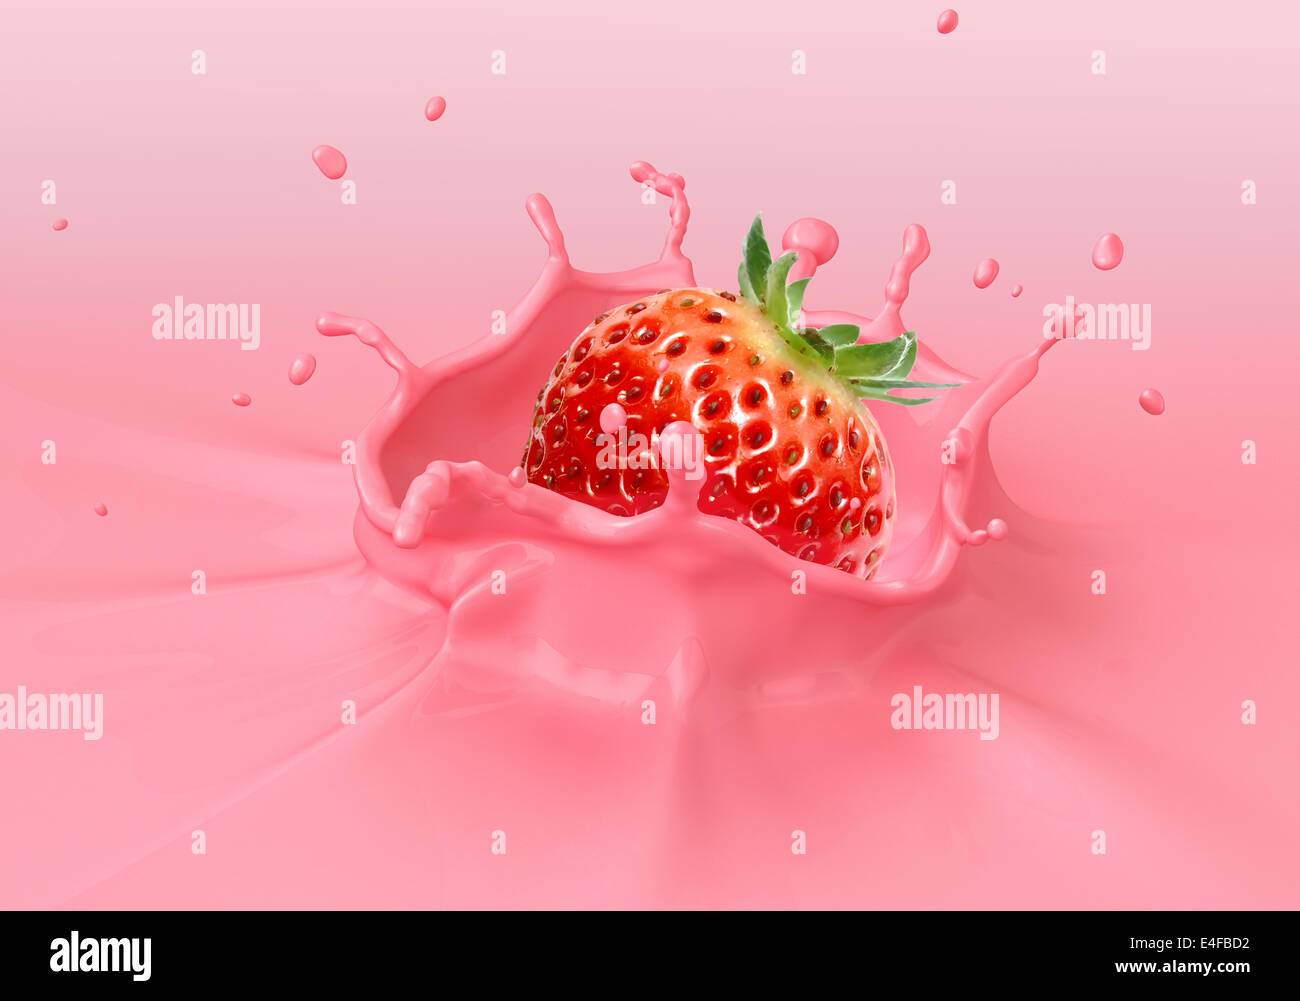 Rose fraise tomber dans un liquide crémeux aux éclaboussures. Vue en gros plan. Banque D'Images